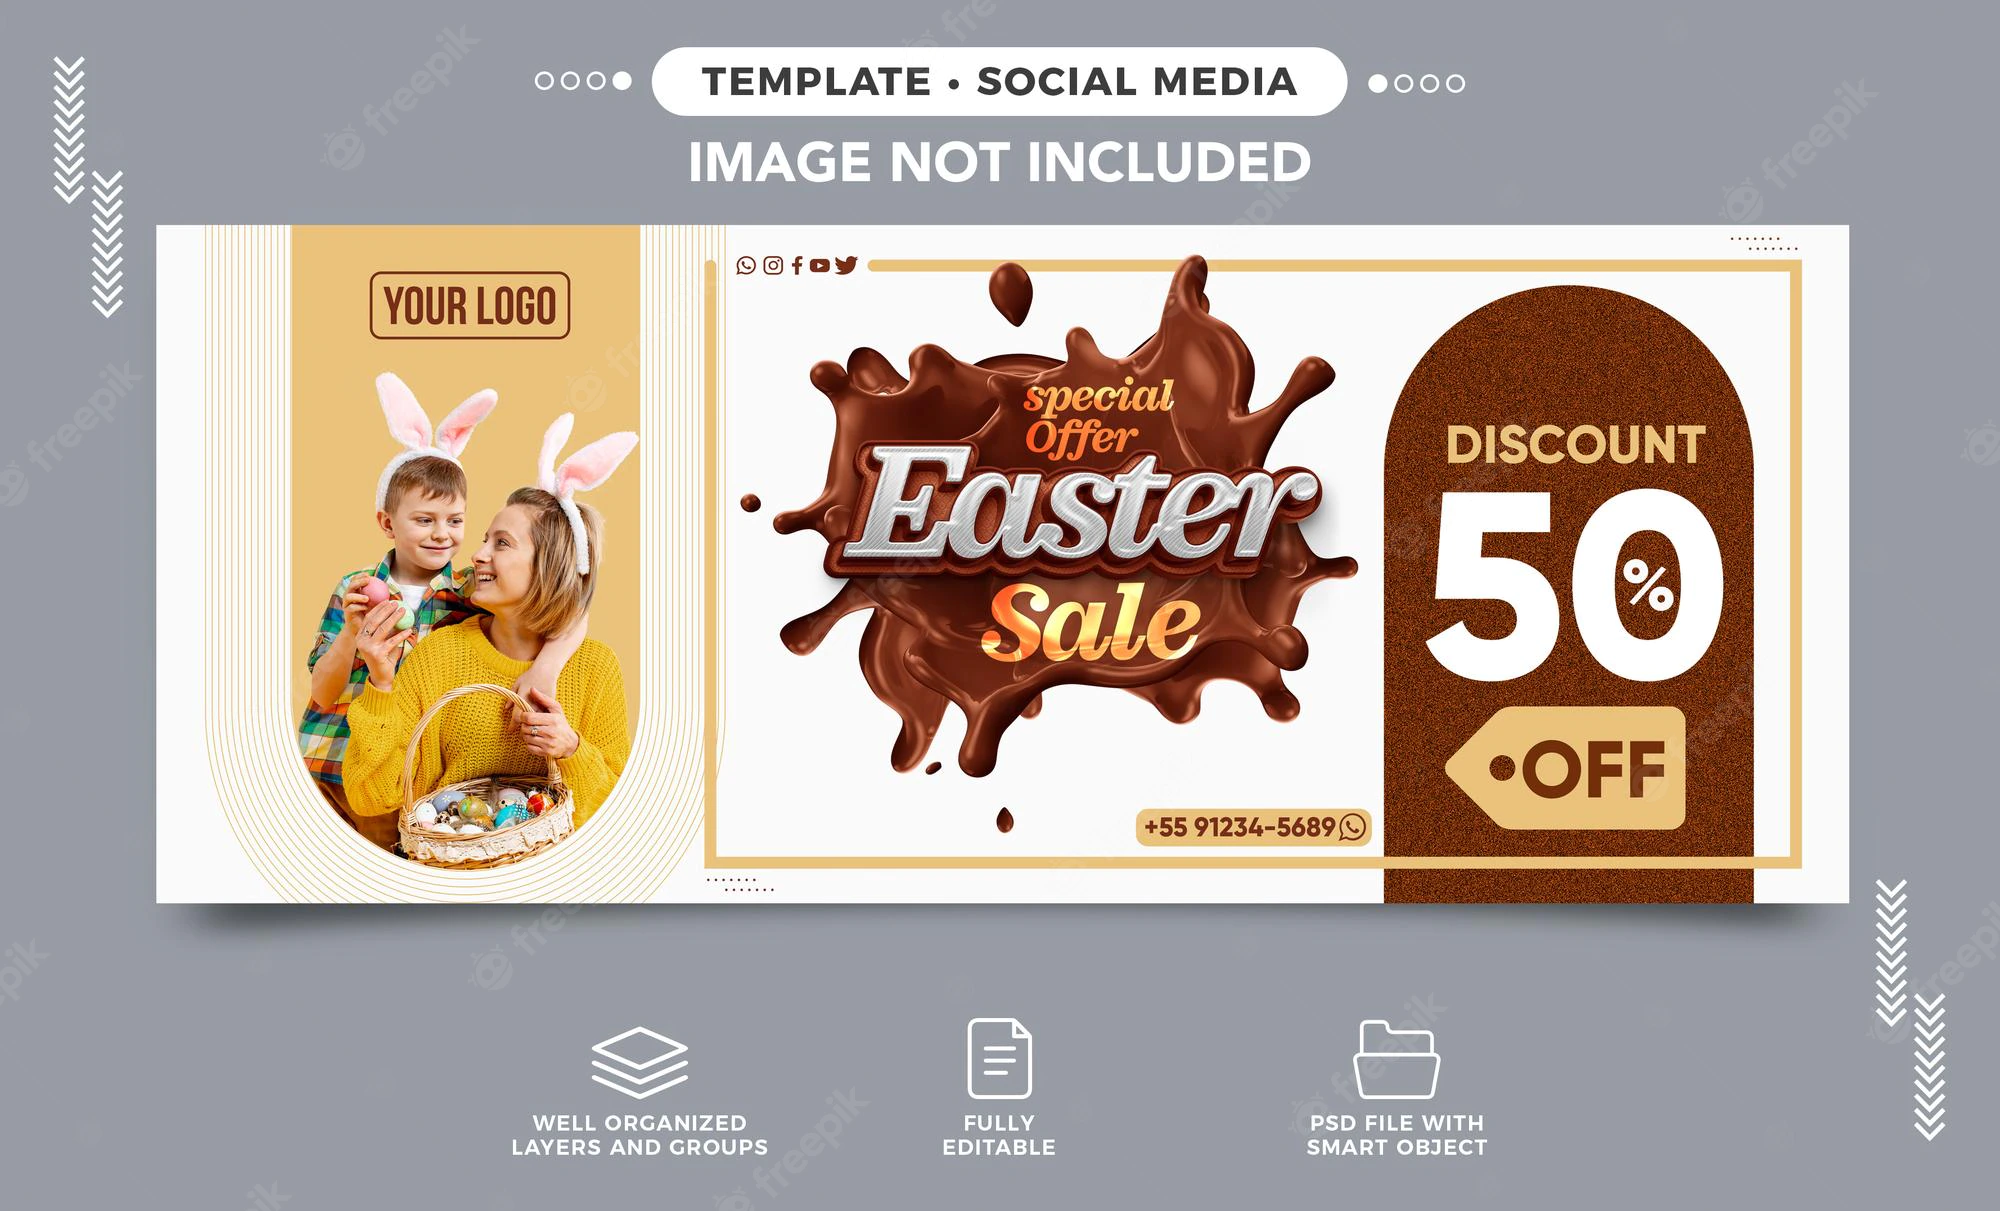 Social Media Banner Instagram Special Offer Easter Sale Up 50 Off 220664 2982